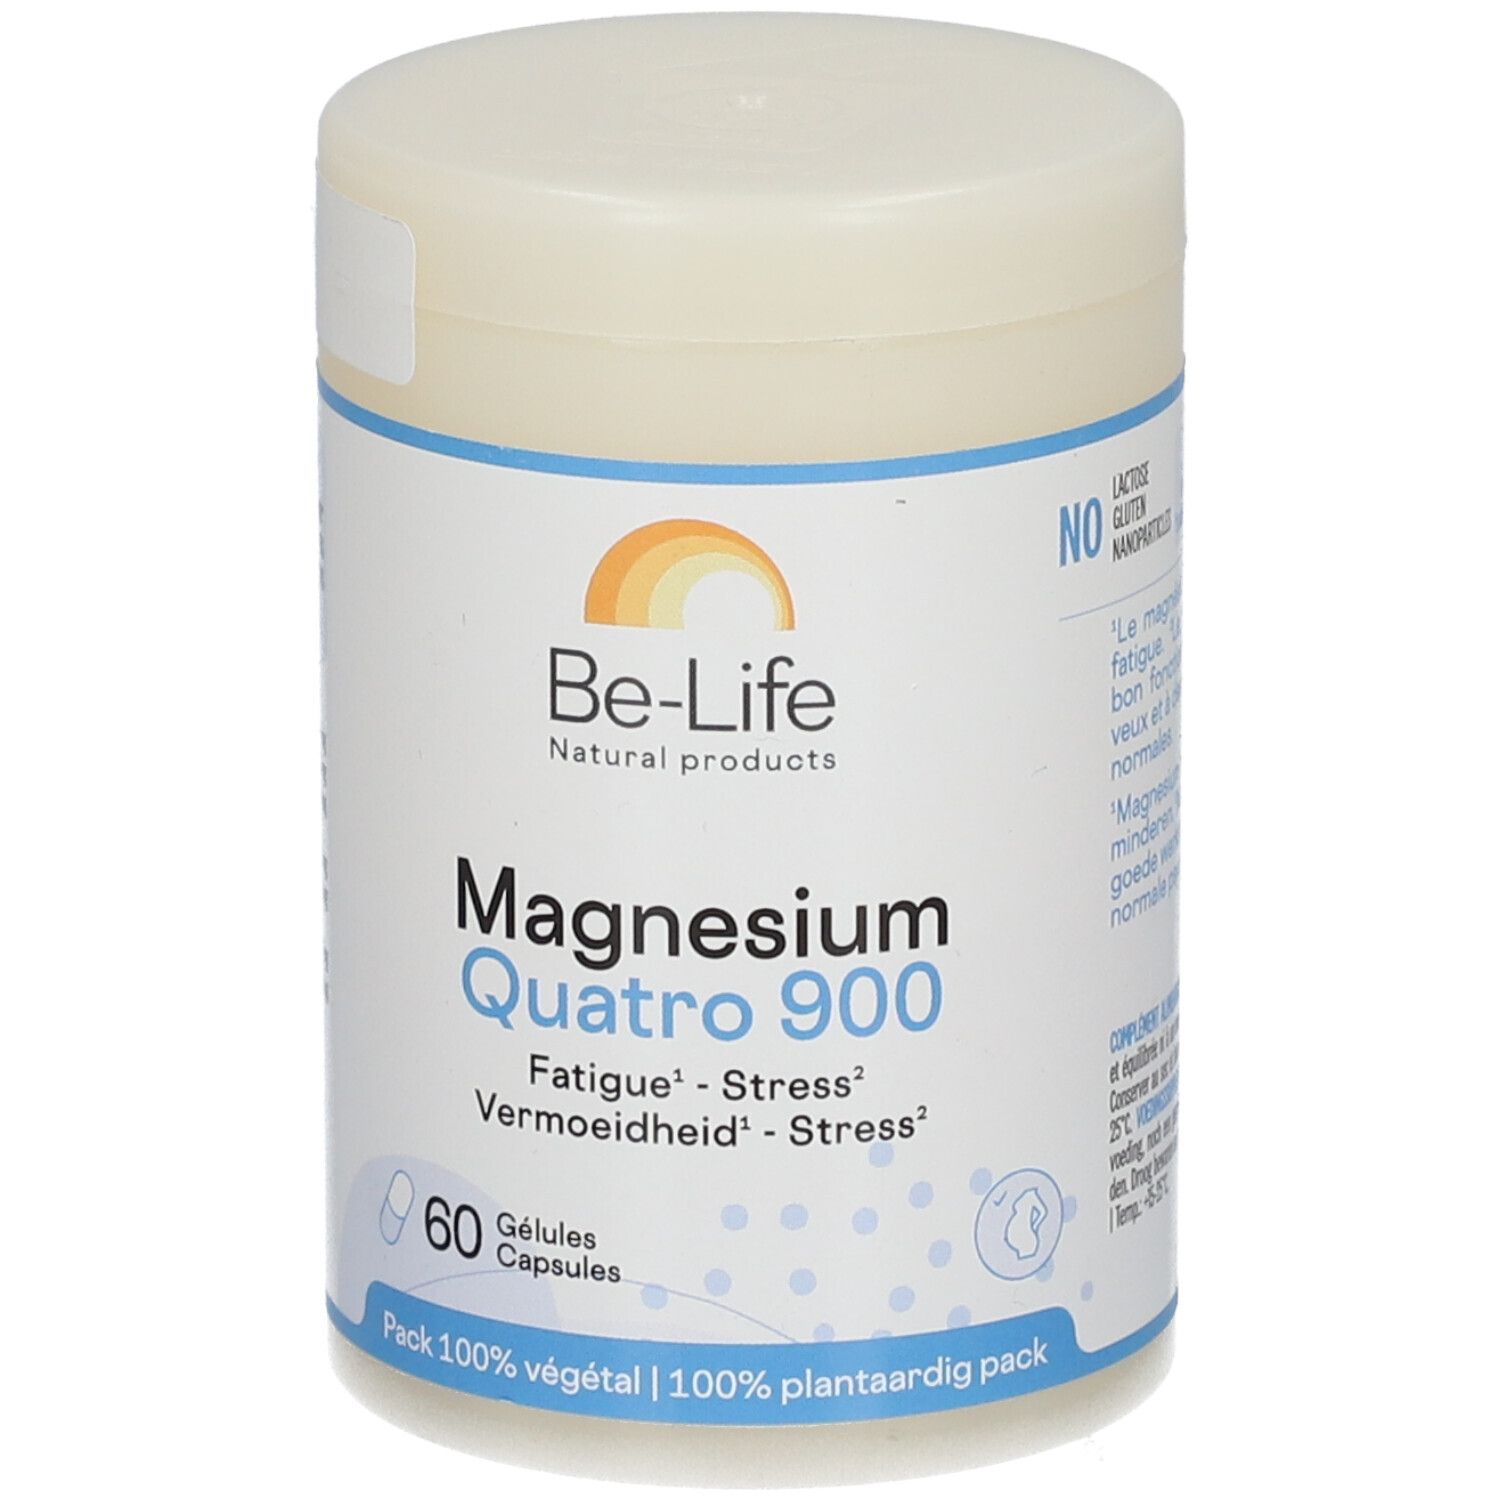 Be-Life Magnesium Quatro 900